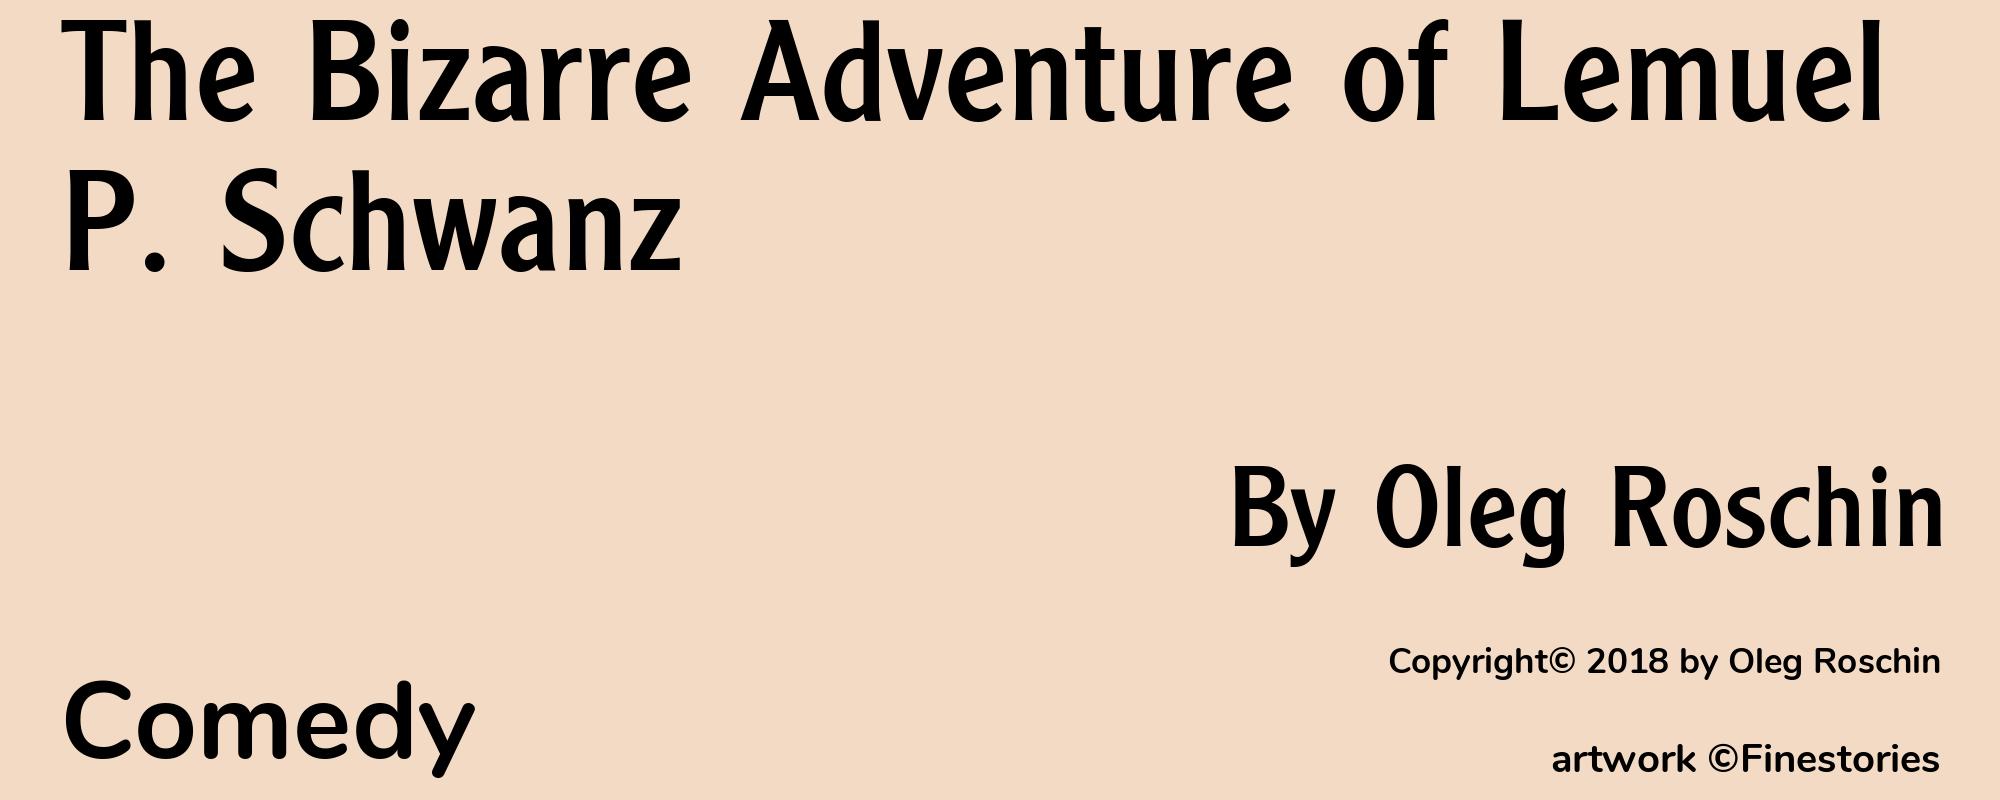 The Bizarre Adventure of Lemuel P. Schwanz - Cover